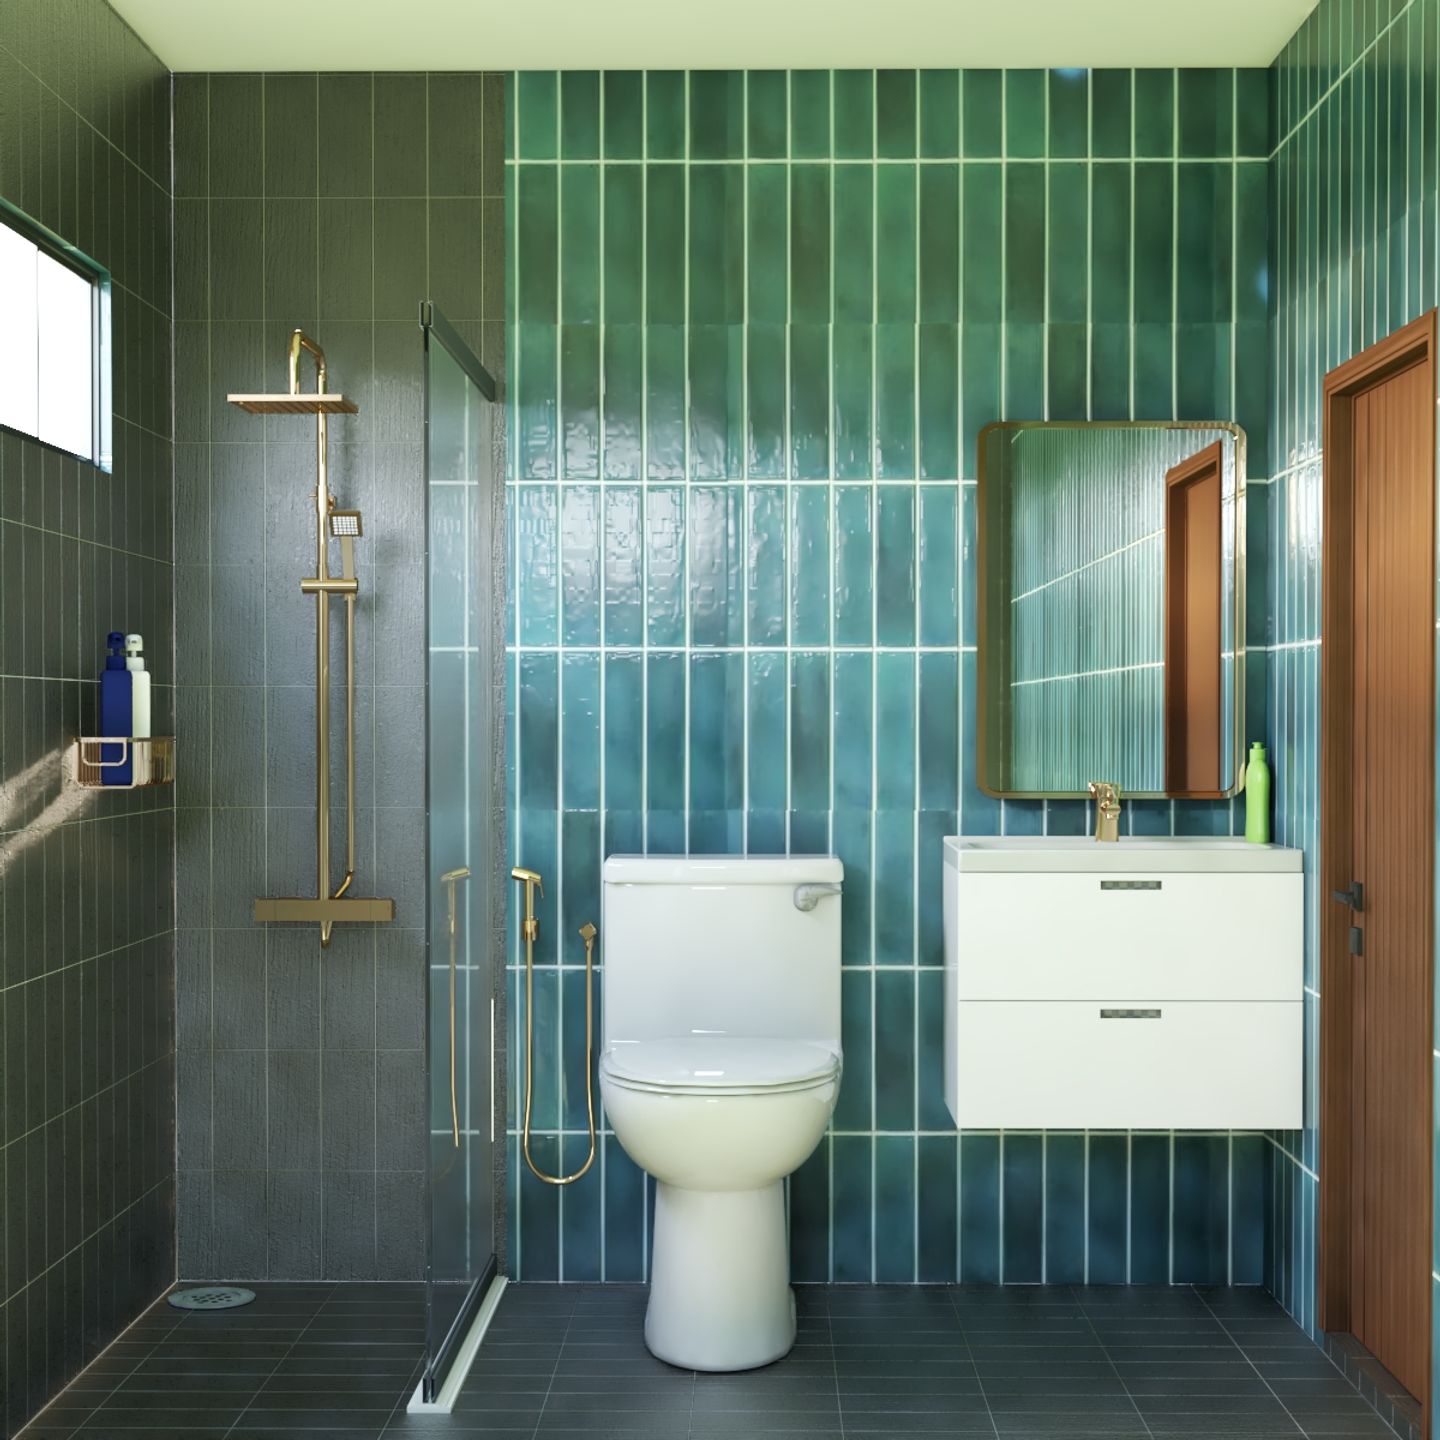 Compact Bathroom Design With Golden Fixtures - Livspace